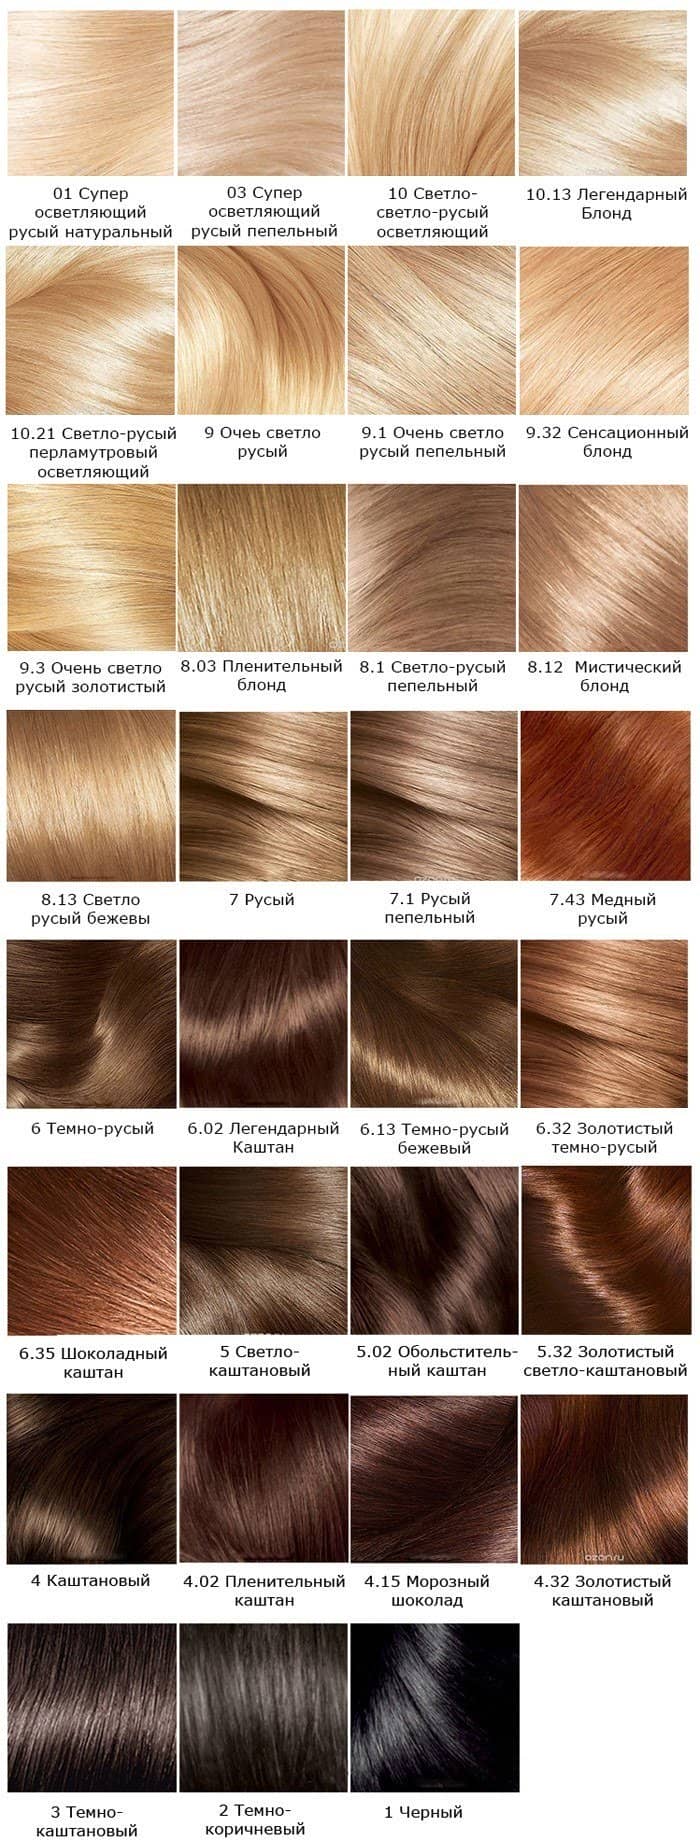 bdc7e25a14affdfd3939475381825b3b Фарба для волосся Лореаль: палітра кольорів (фото)